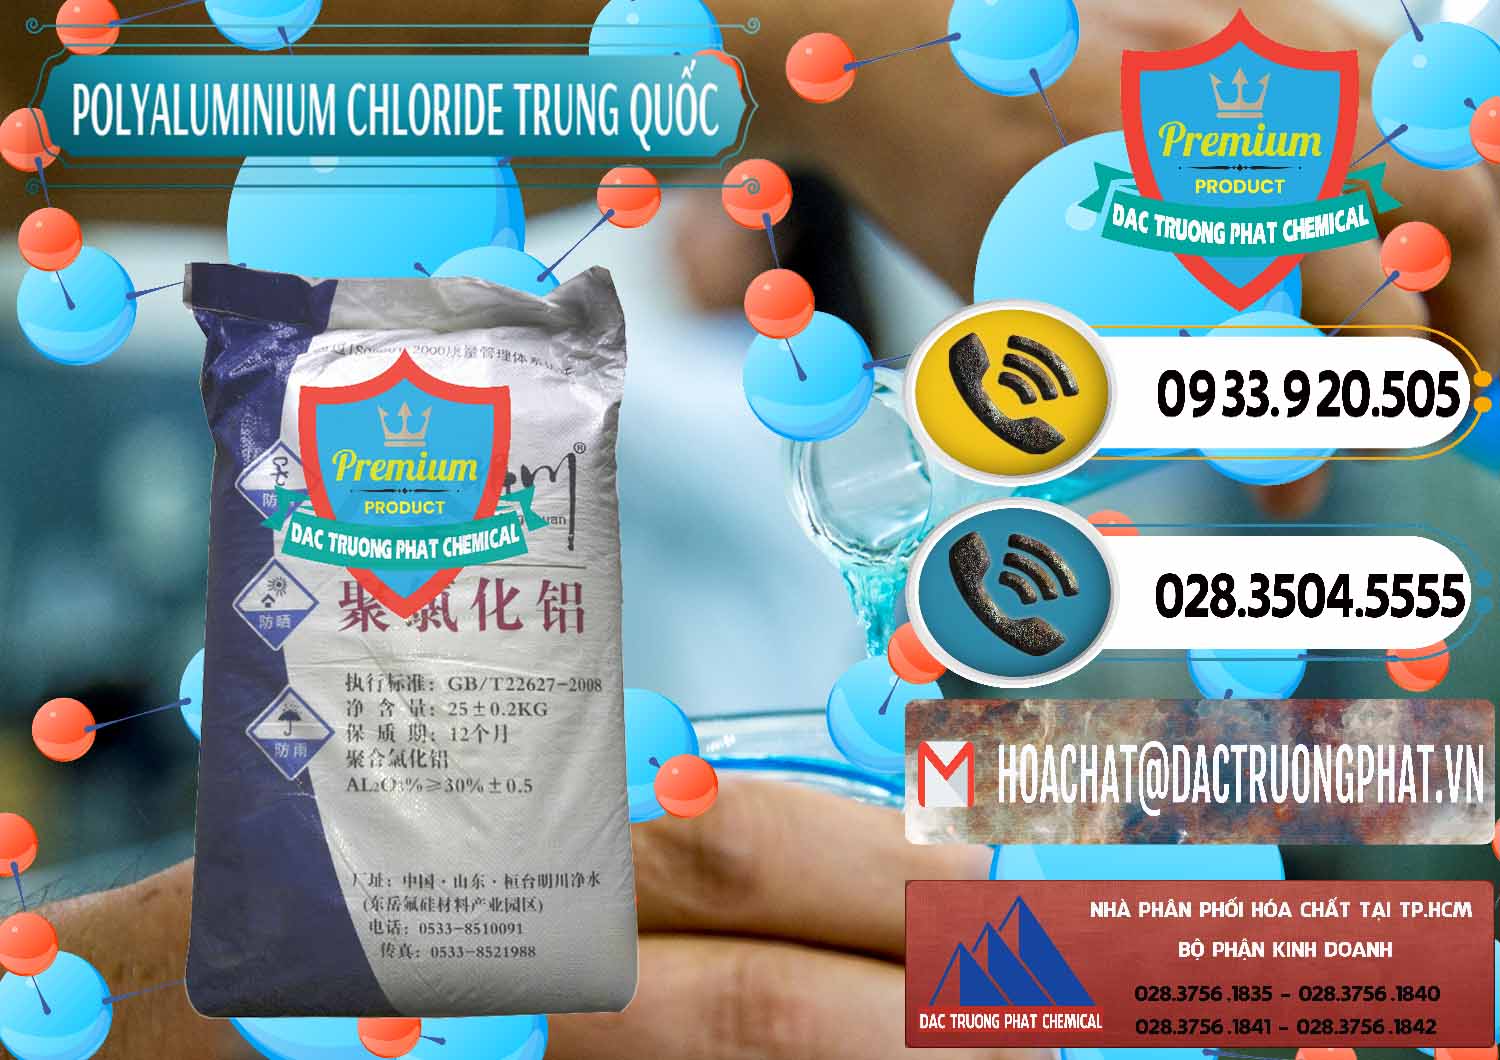 Cty chuyên nhập khẩu - bán PAC - Polyaluminium Chloride Mingchuan Trung Quốc China - 0445 - Đơn vị kinh doanh - phân phối hóa chất tại TP.HCM - hoachatdetnhuom.vn